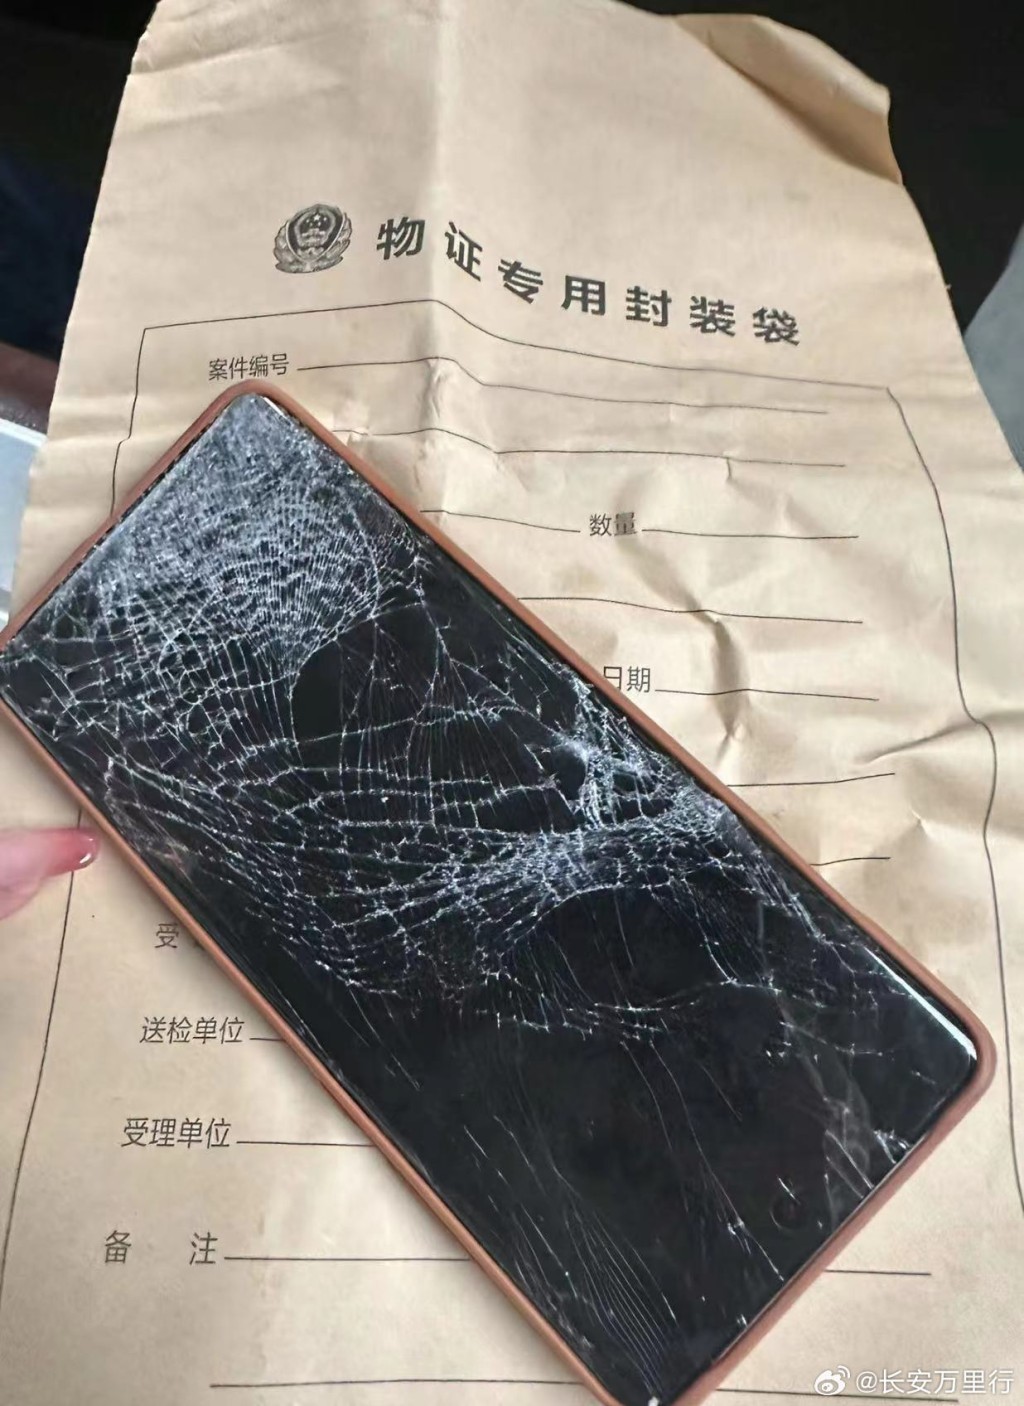 死者手机被压碎。